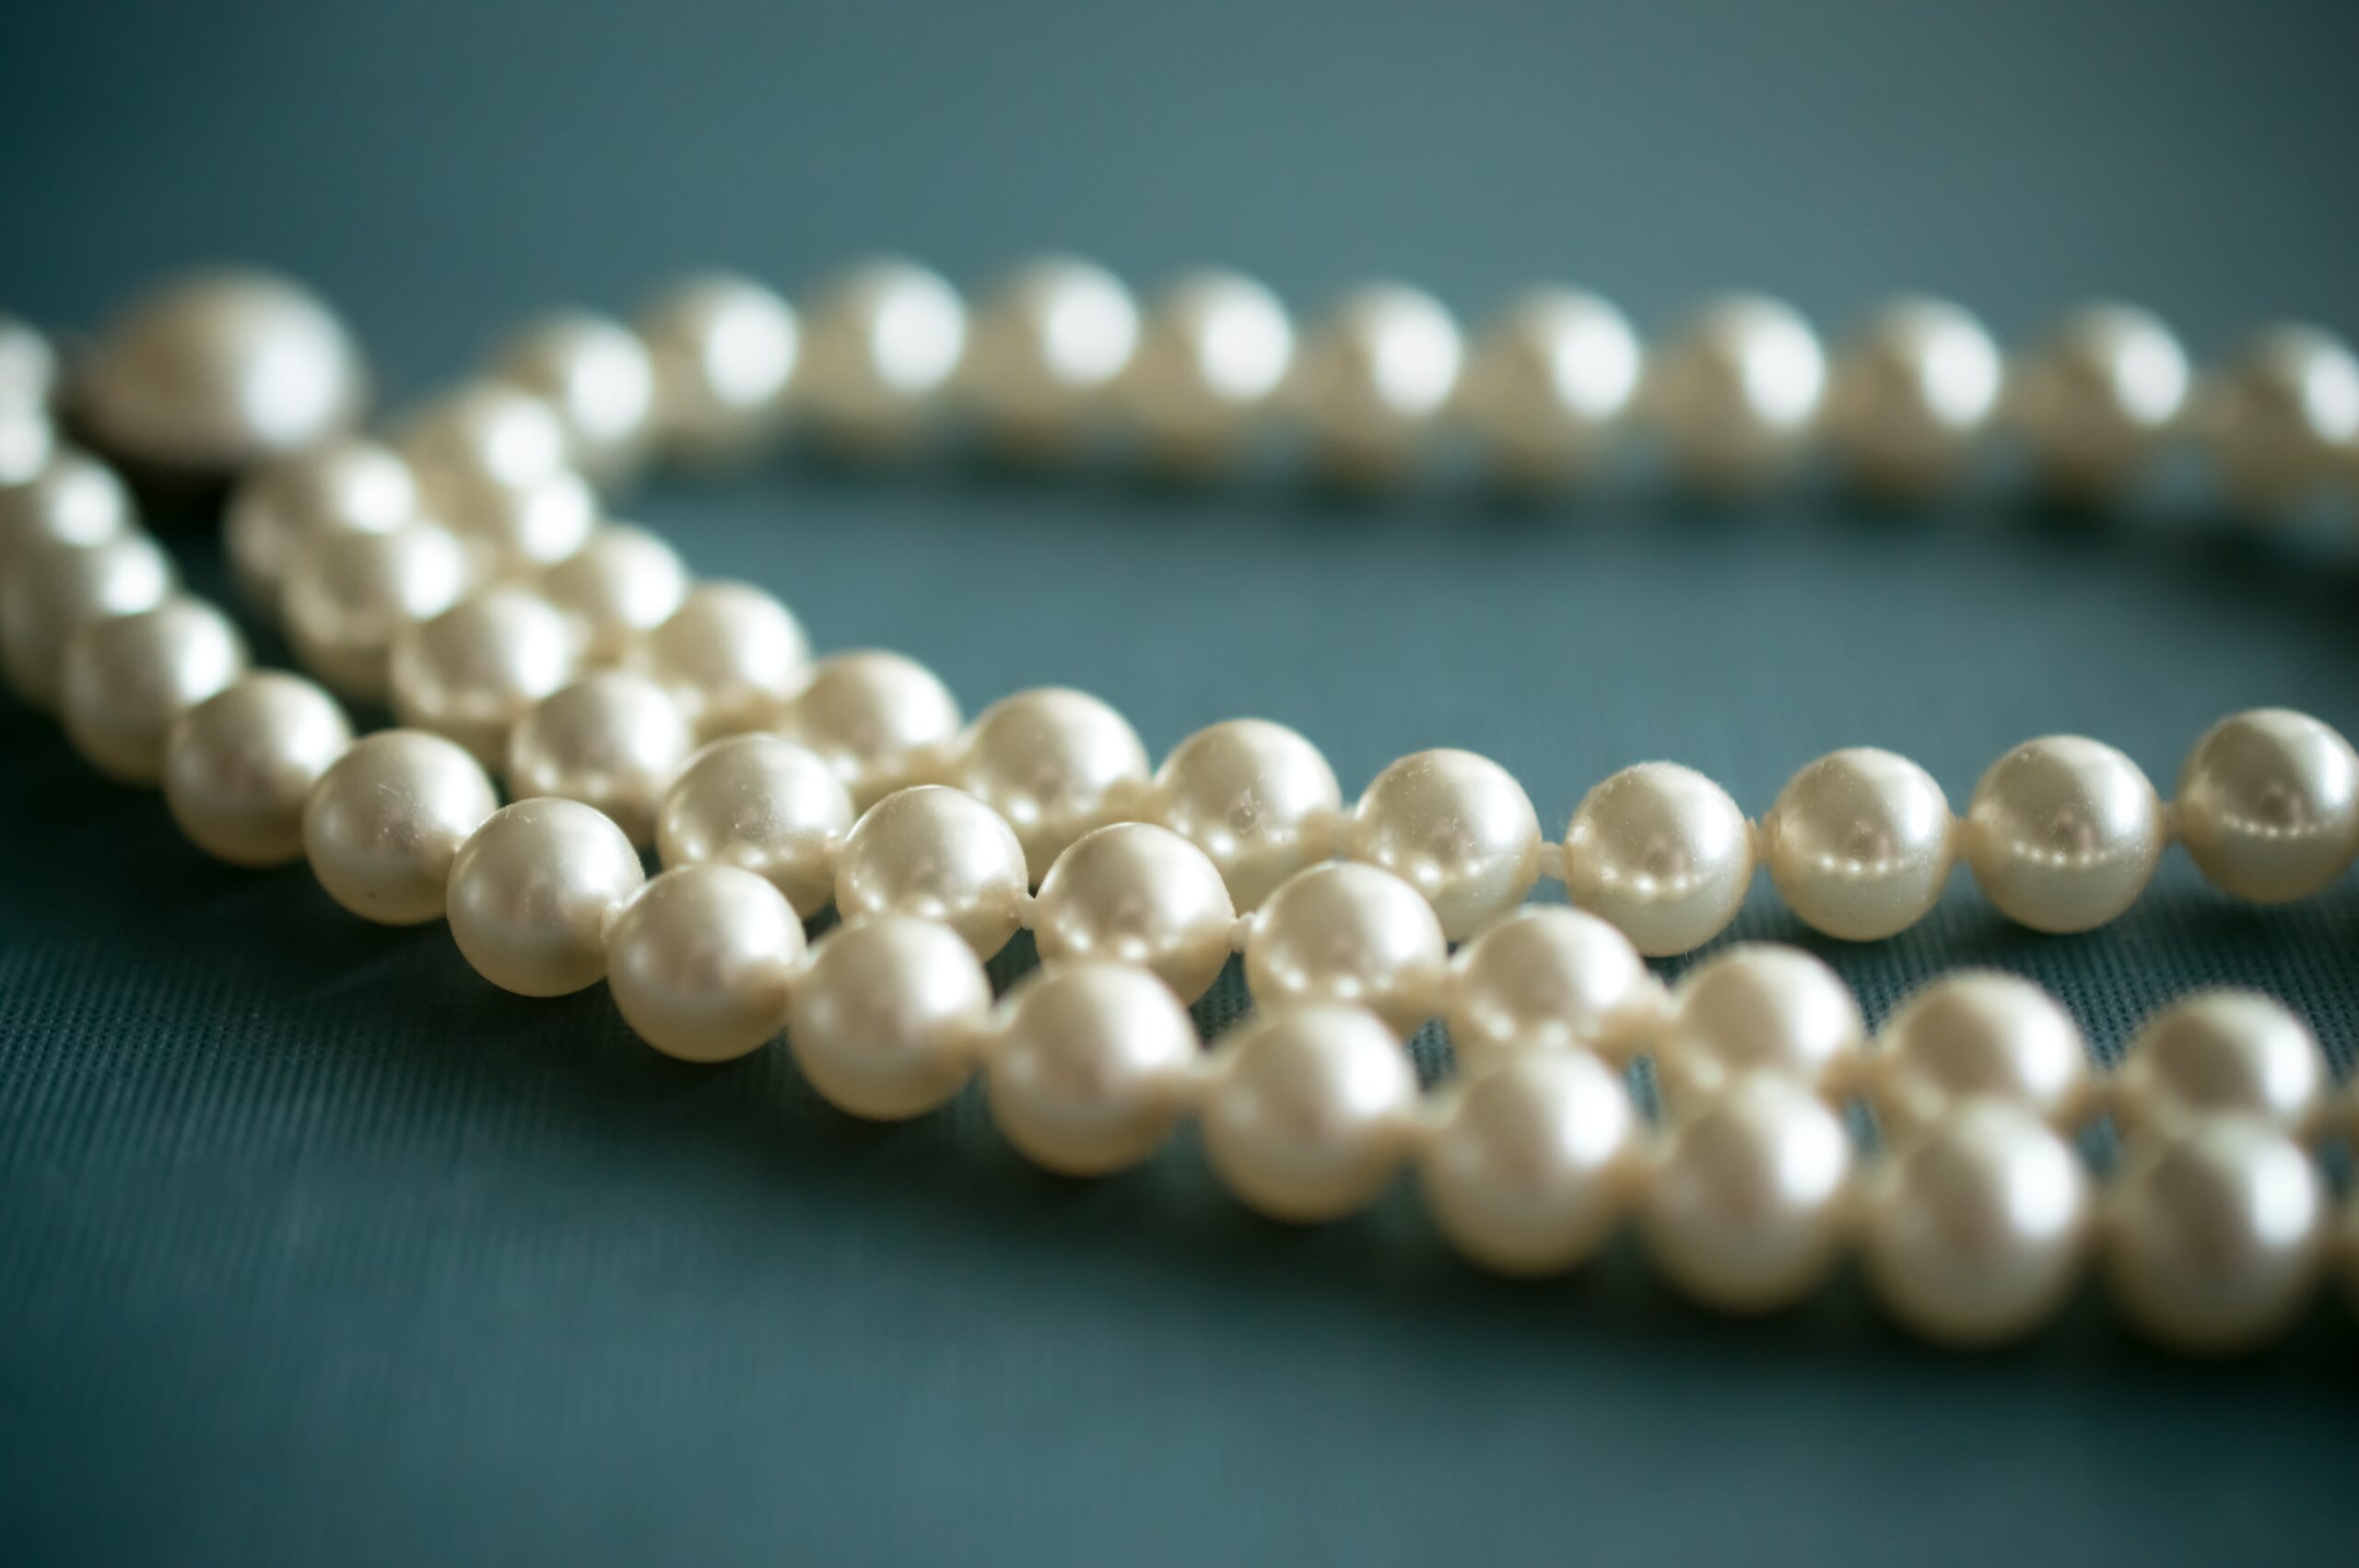 Biblical meanings of pearls in dreams